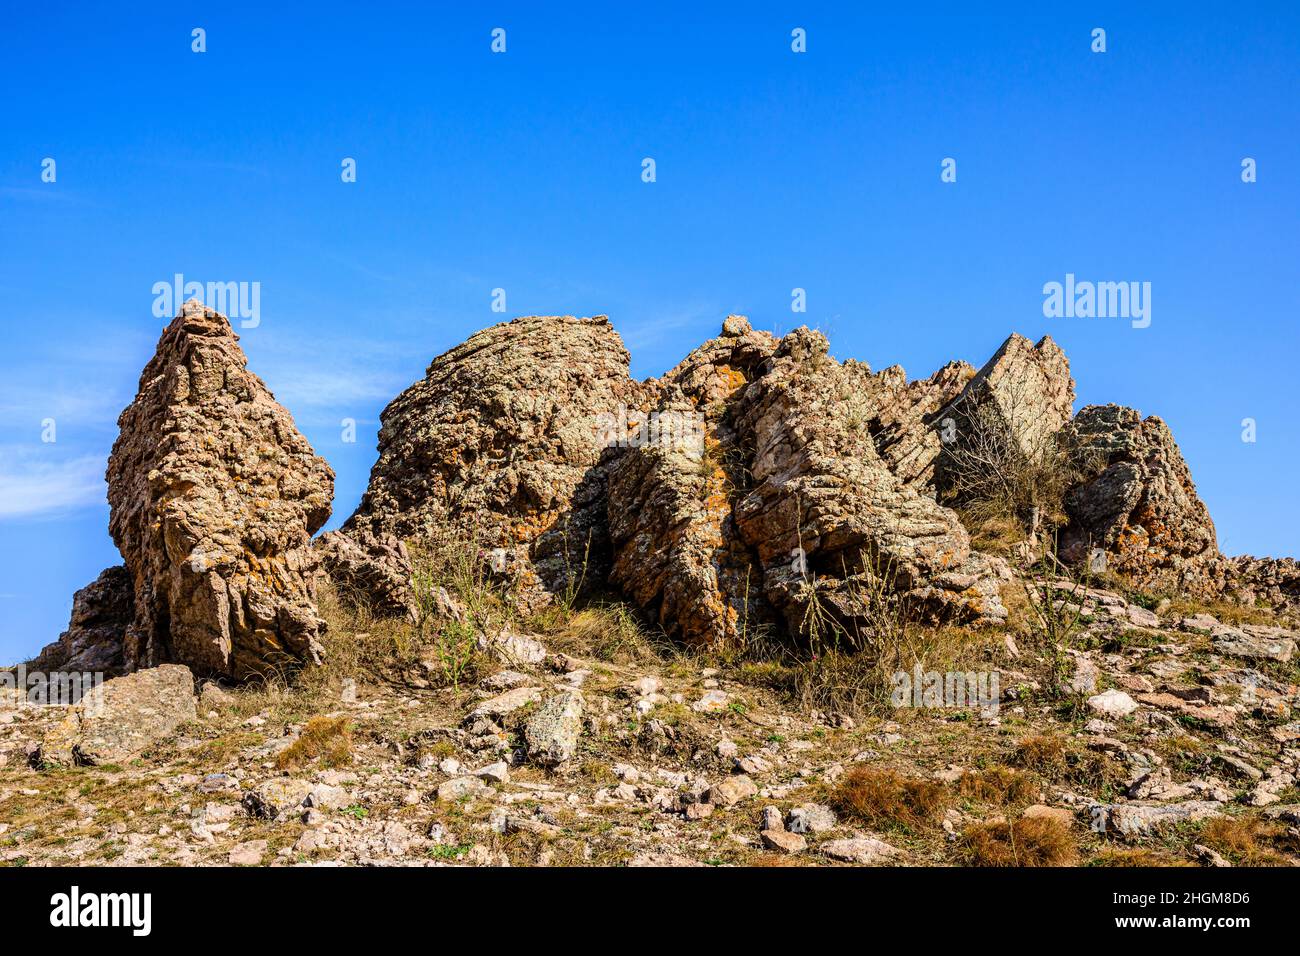 Seltsam geformter Fels auf dem Gipfel des Berges. Stockfoto